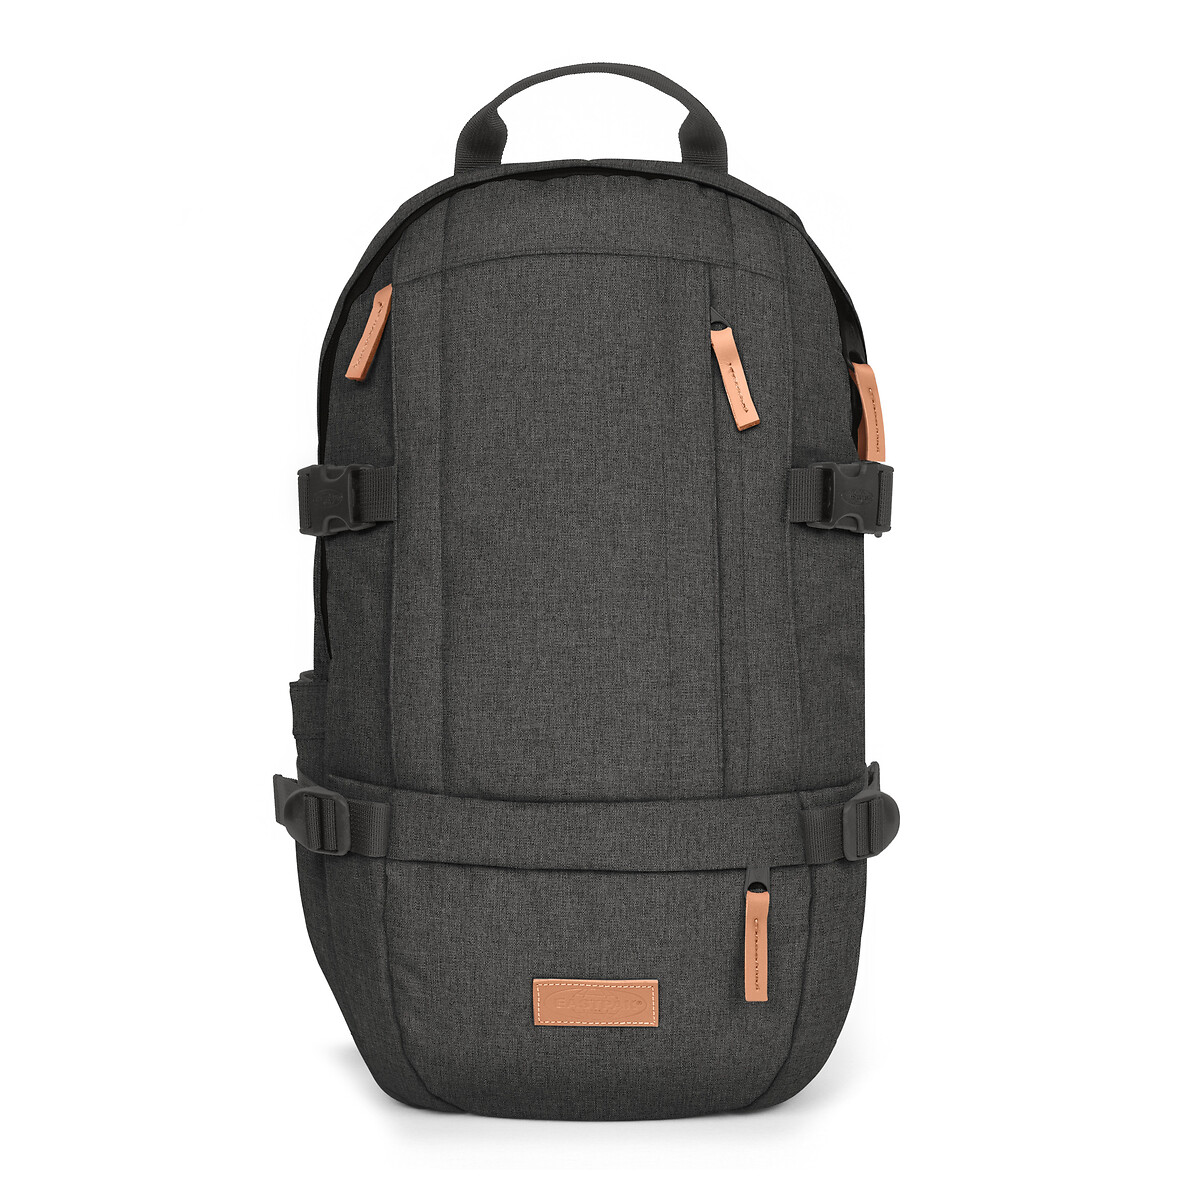 Las mochilas sostenibles de la nueva colección de Eastpak a todo color